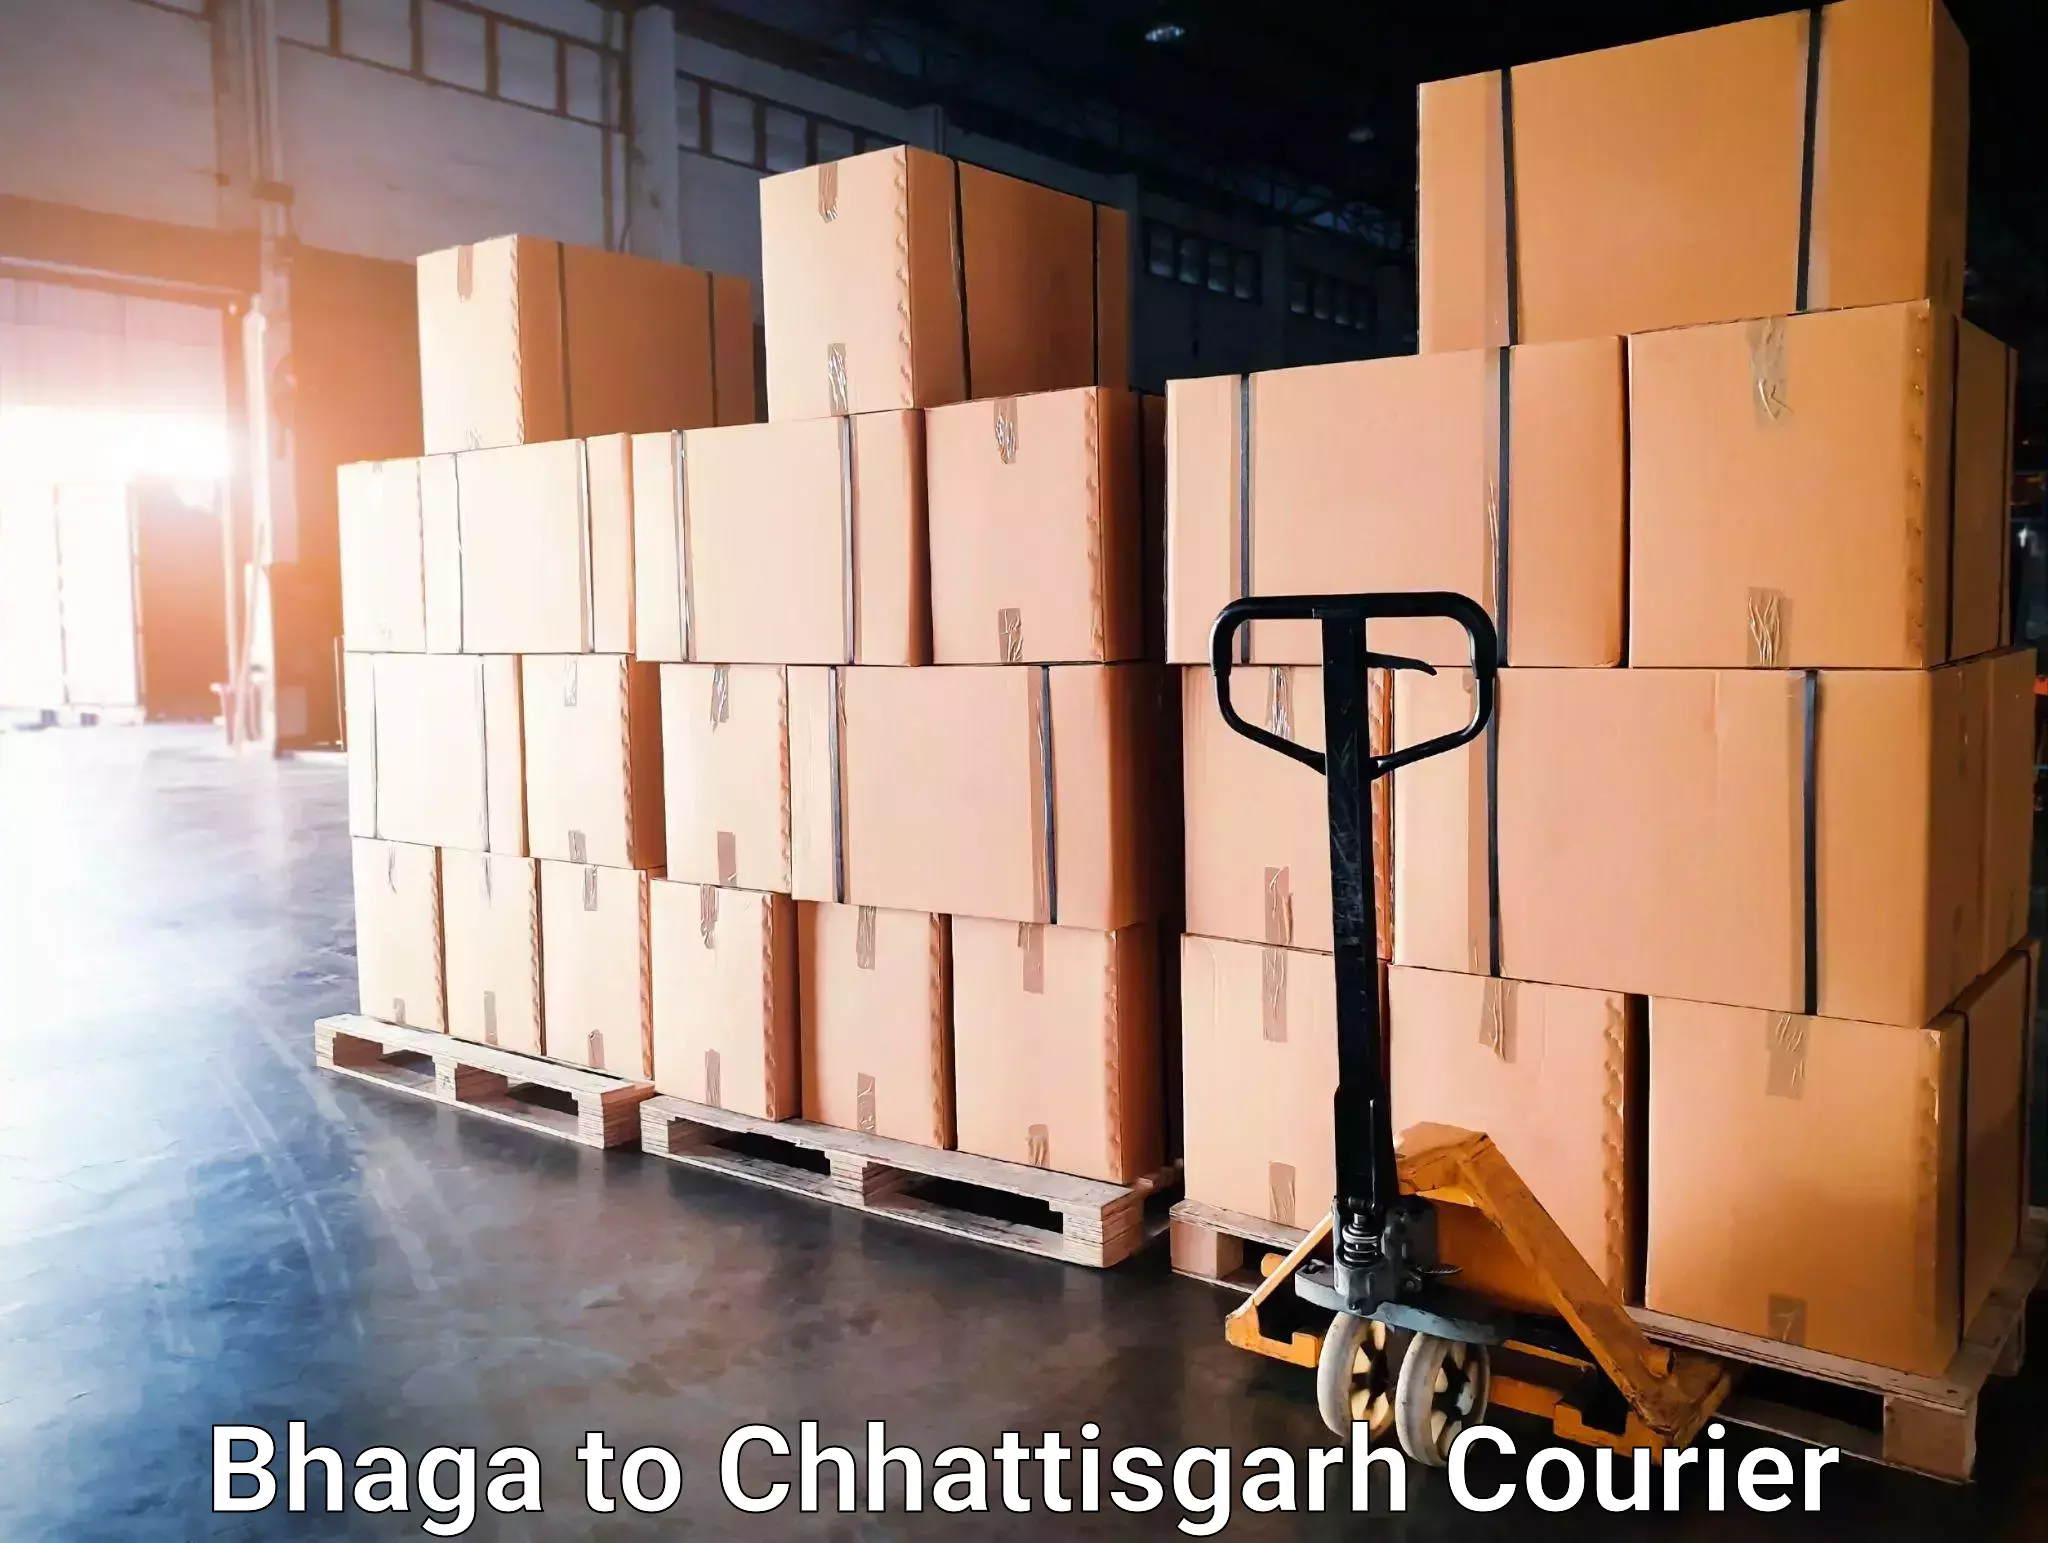 Seamless shipping service Bhaga to Pakhanjur